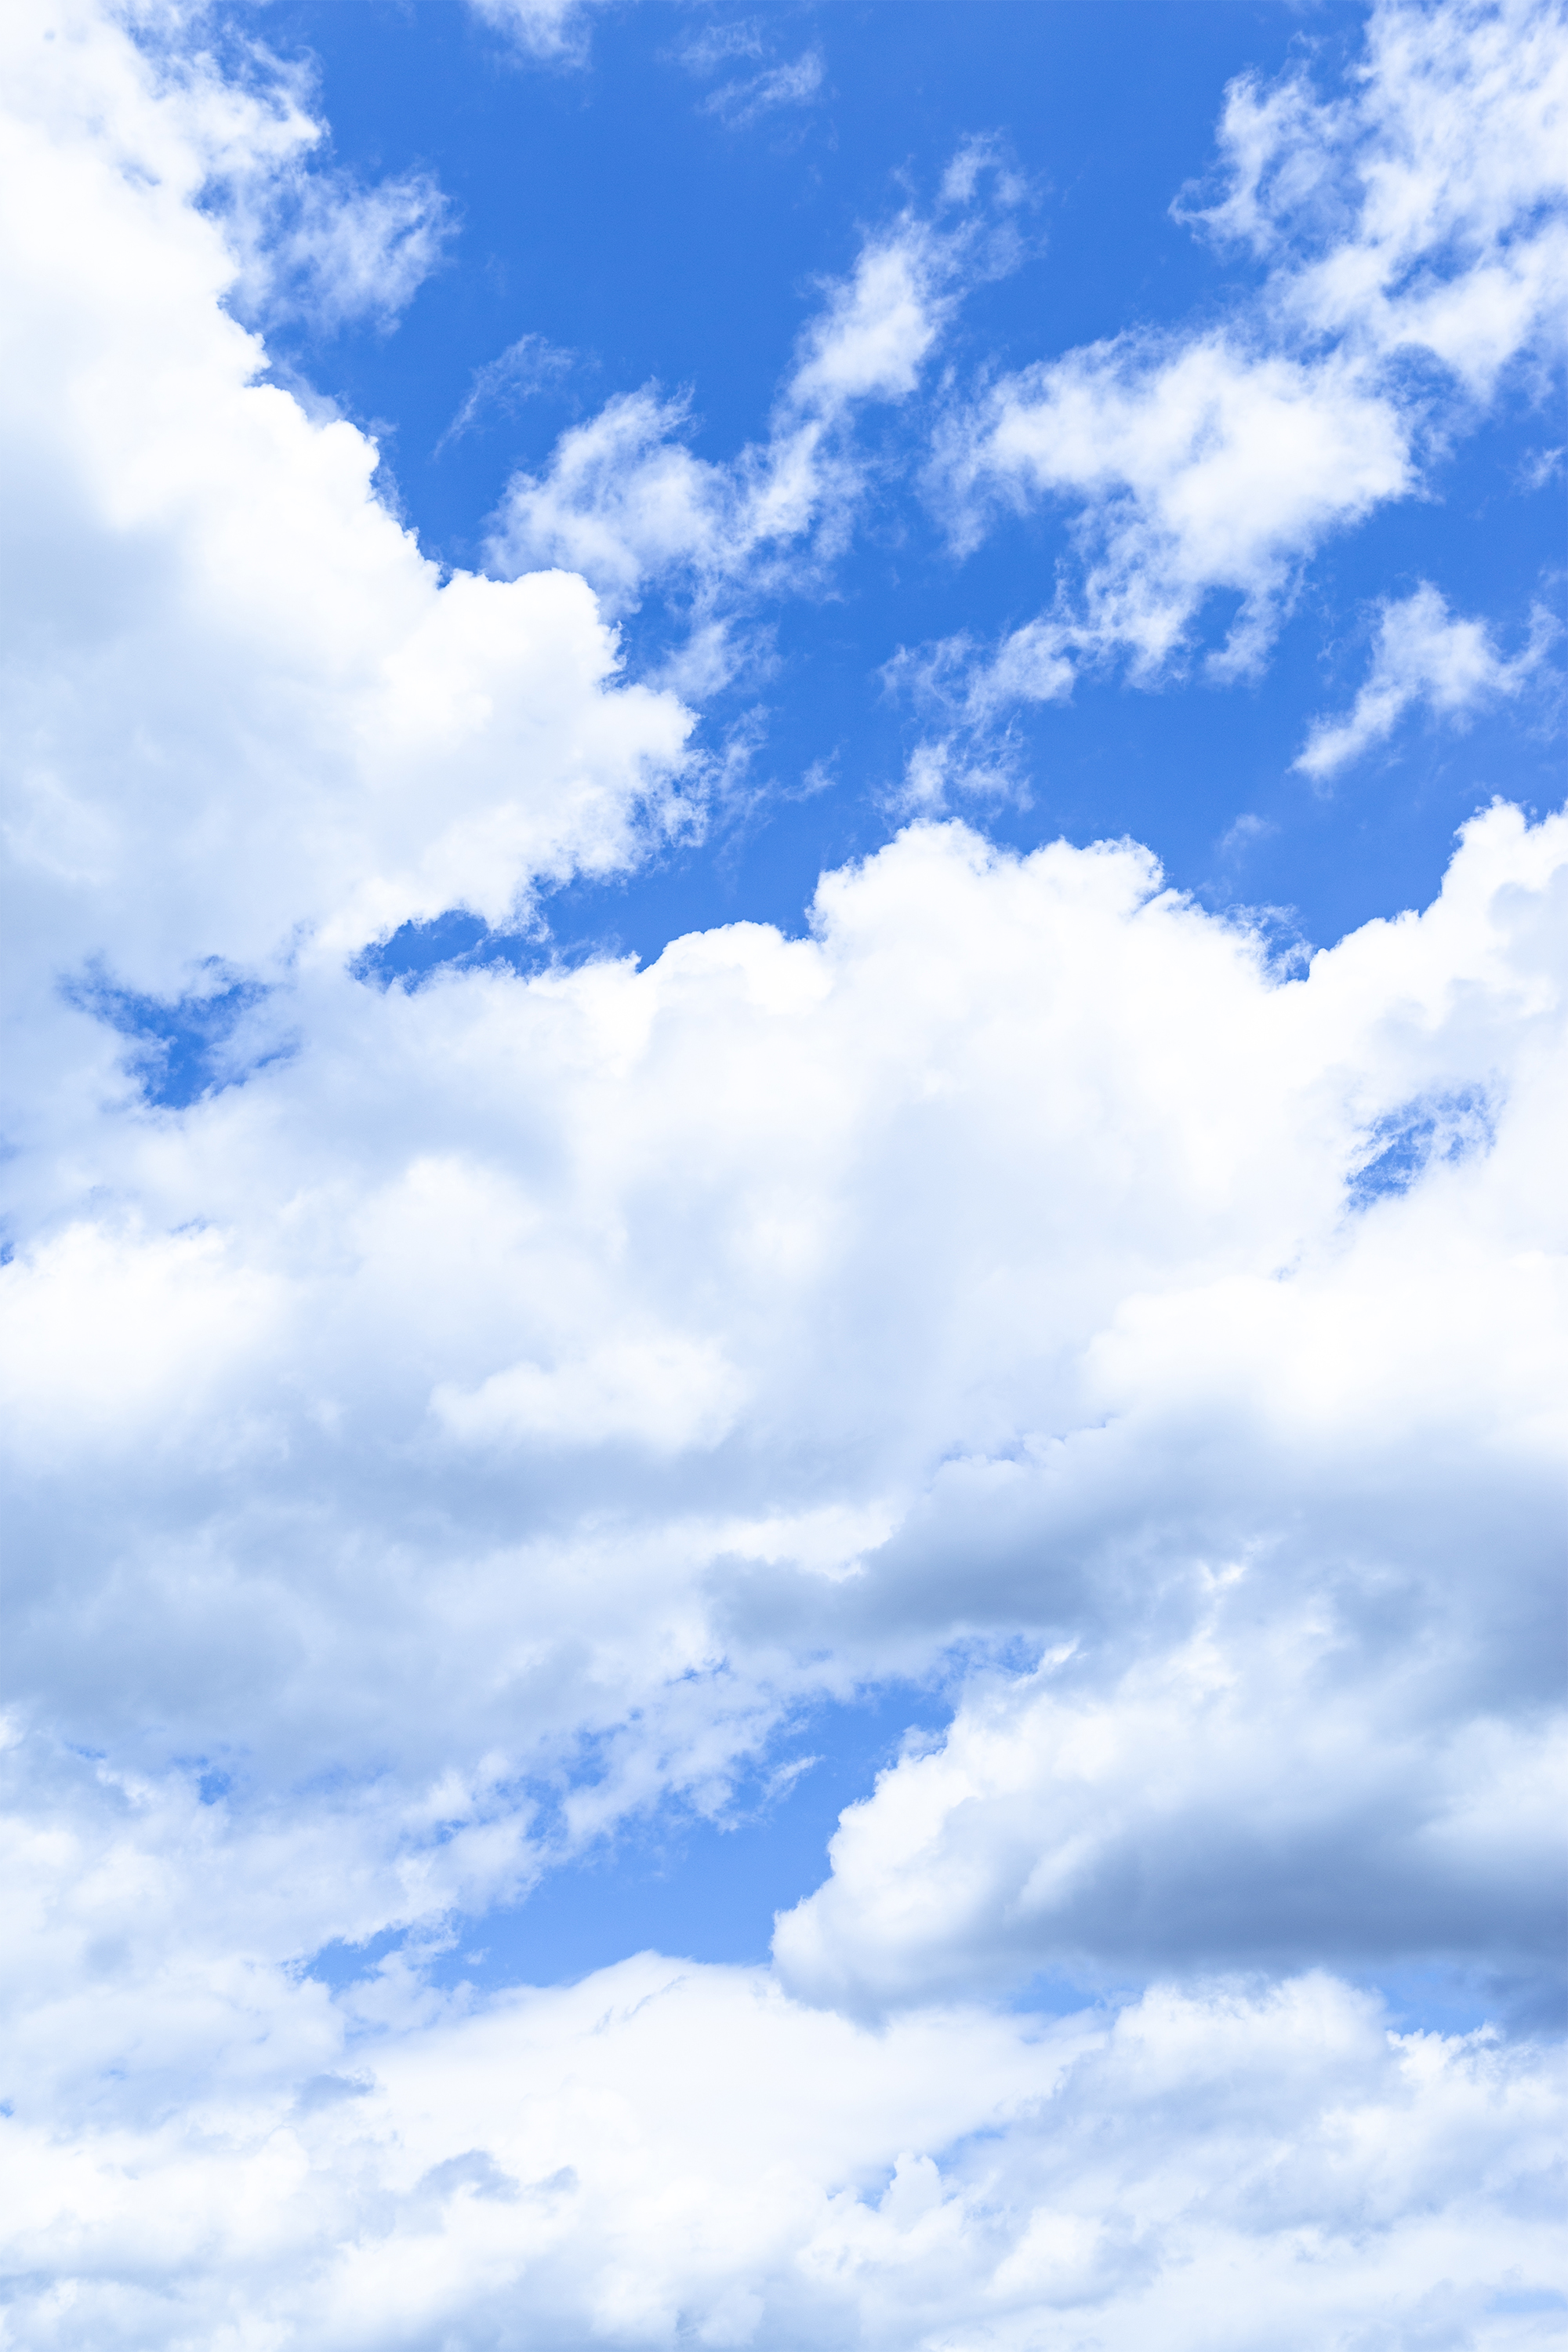 空と雲02 無料の高画質フリー写真素材 イメージズラボ